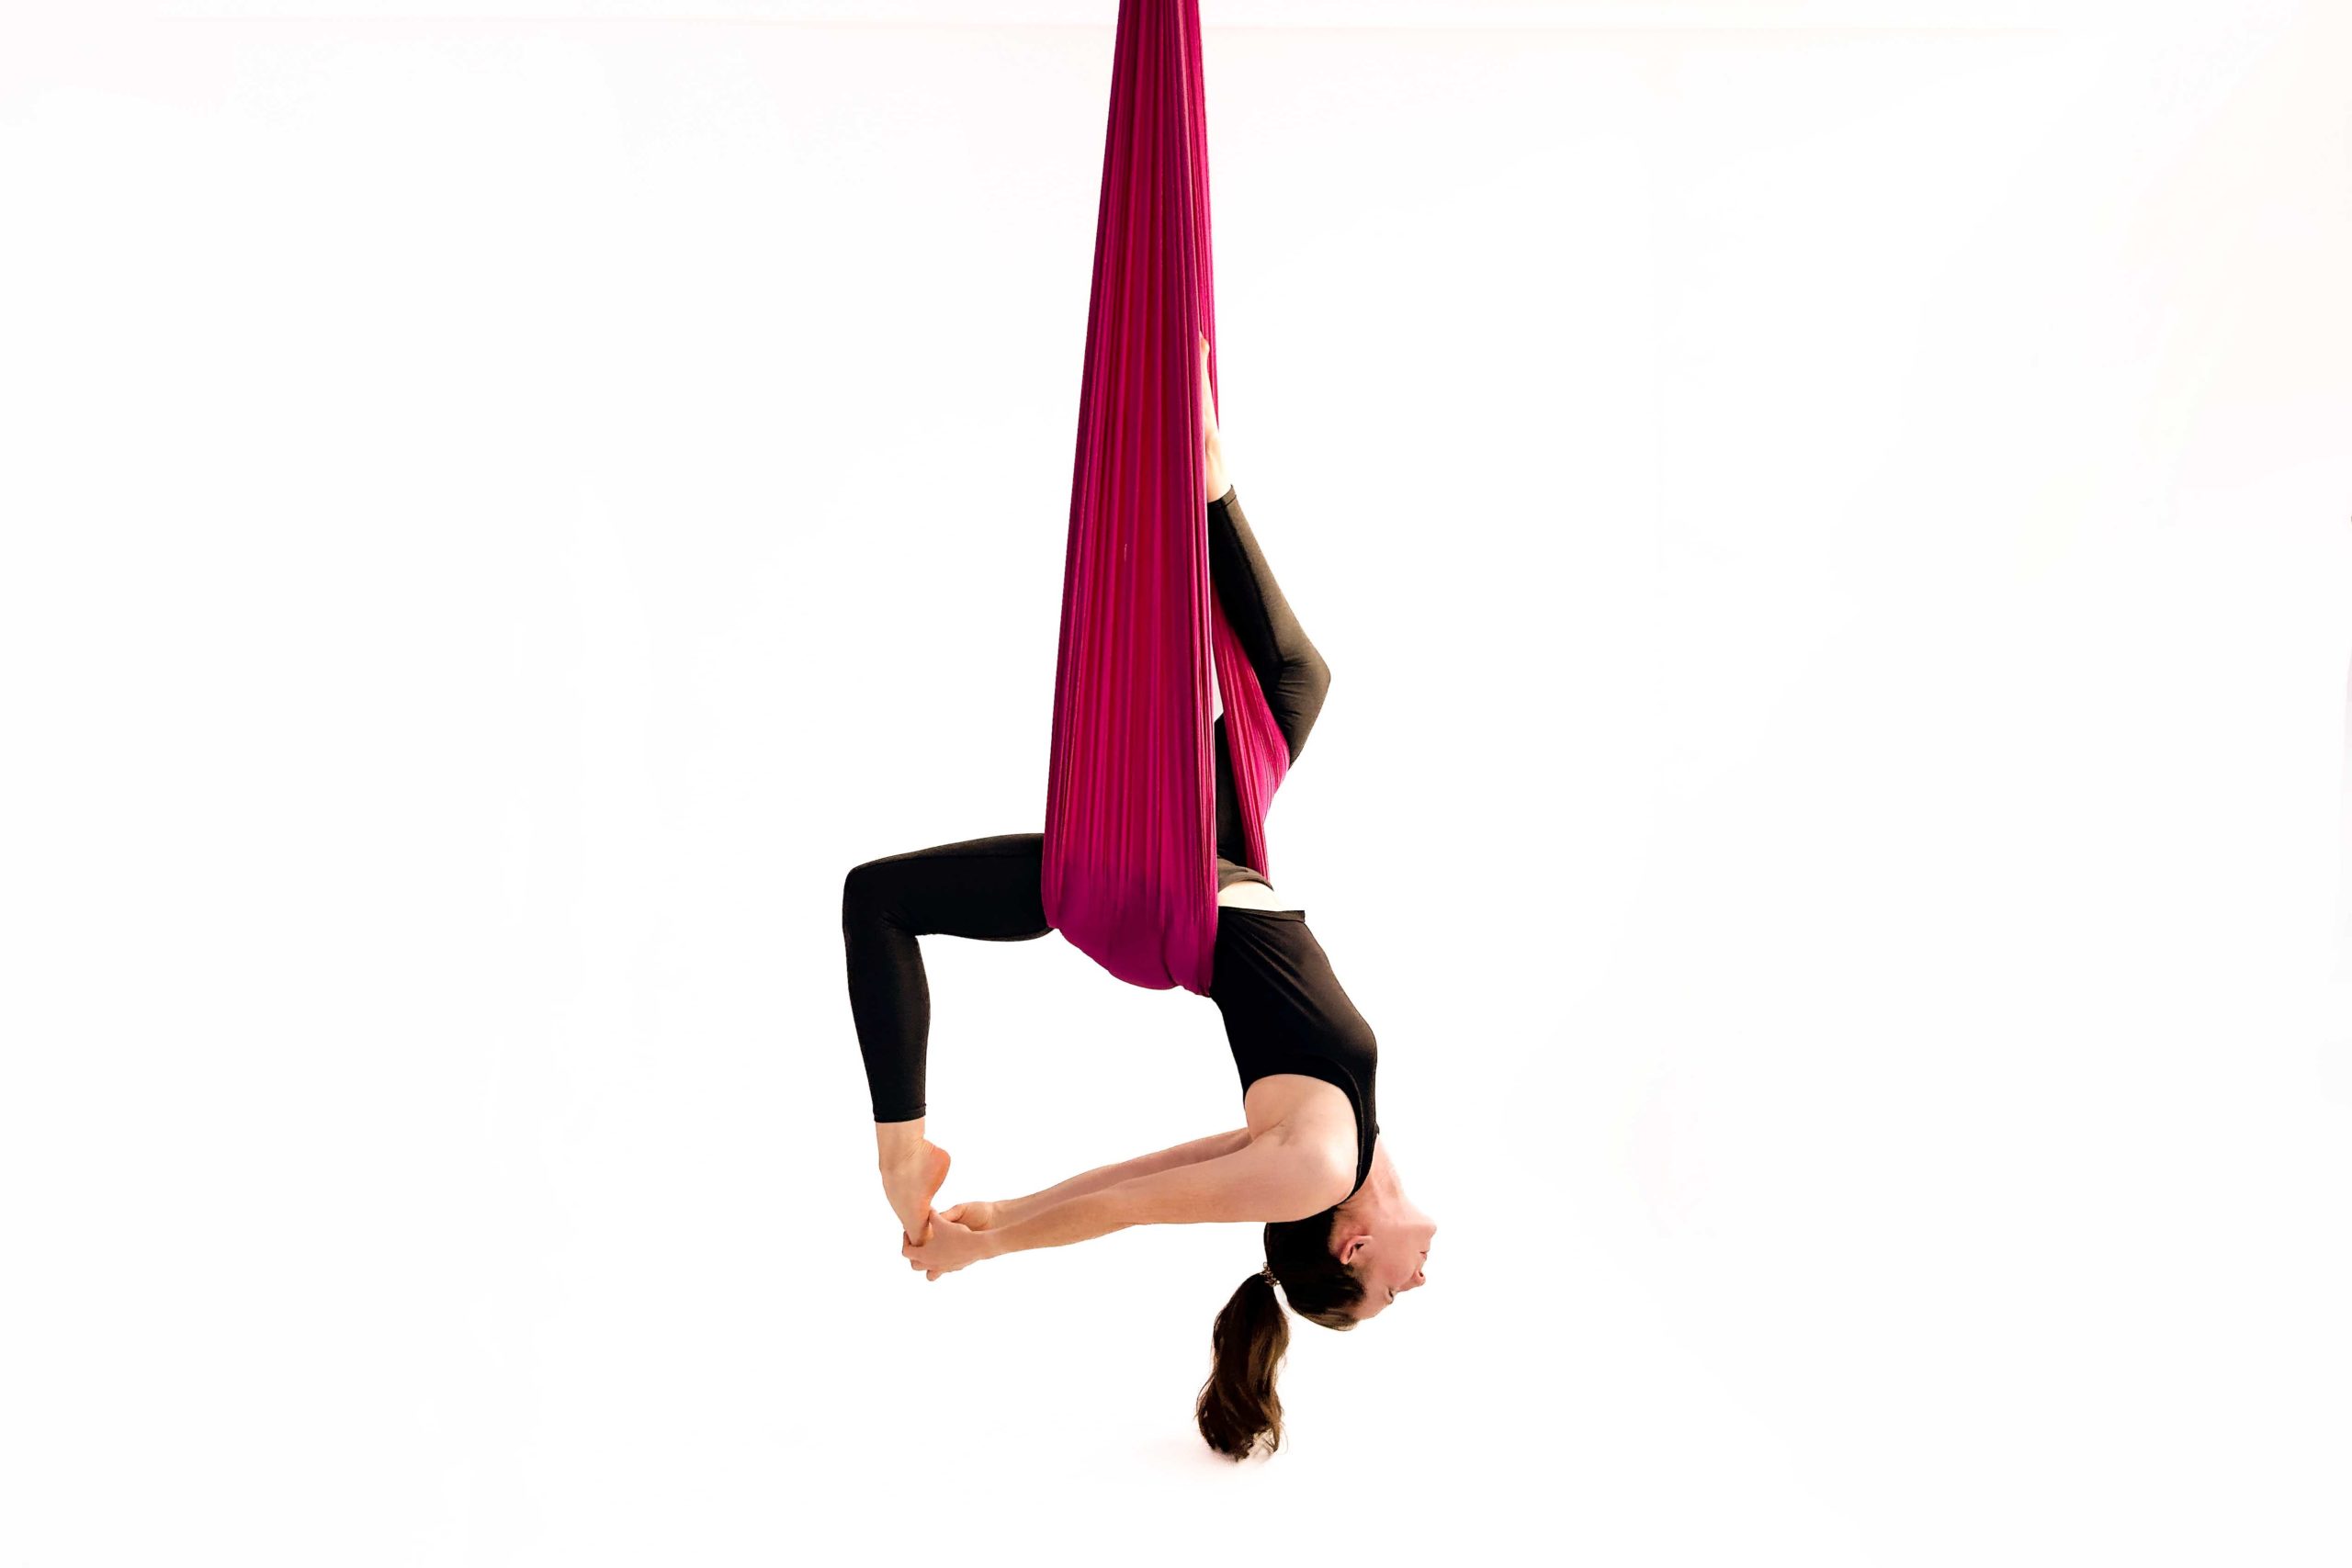 Susi (Trainerin im UpsideDown Studio Bad Homburg, nähe Frankfurt) hängt im Silk (tuvh) beim Aerial Yoga